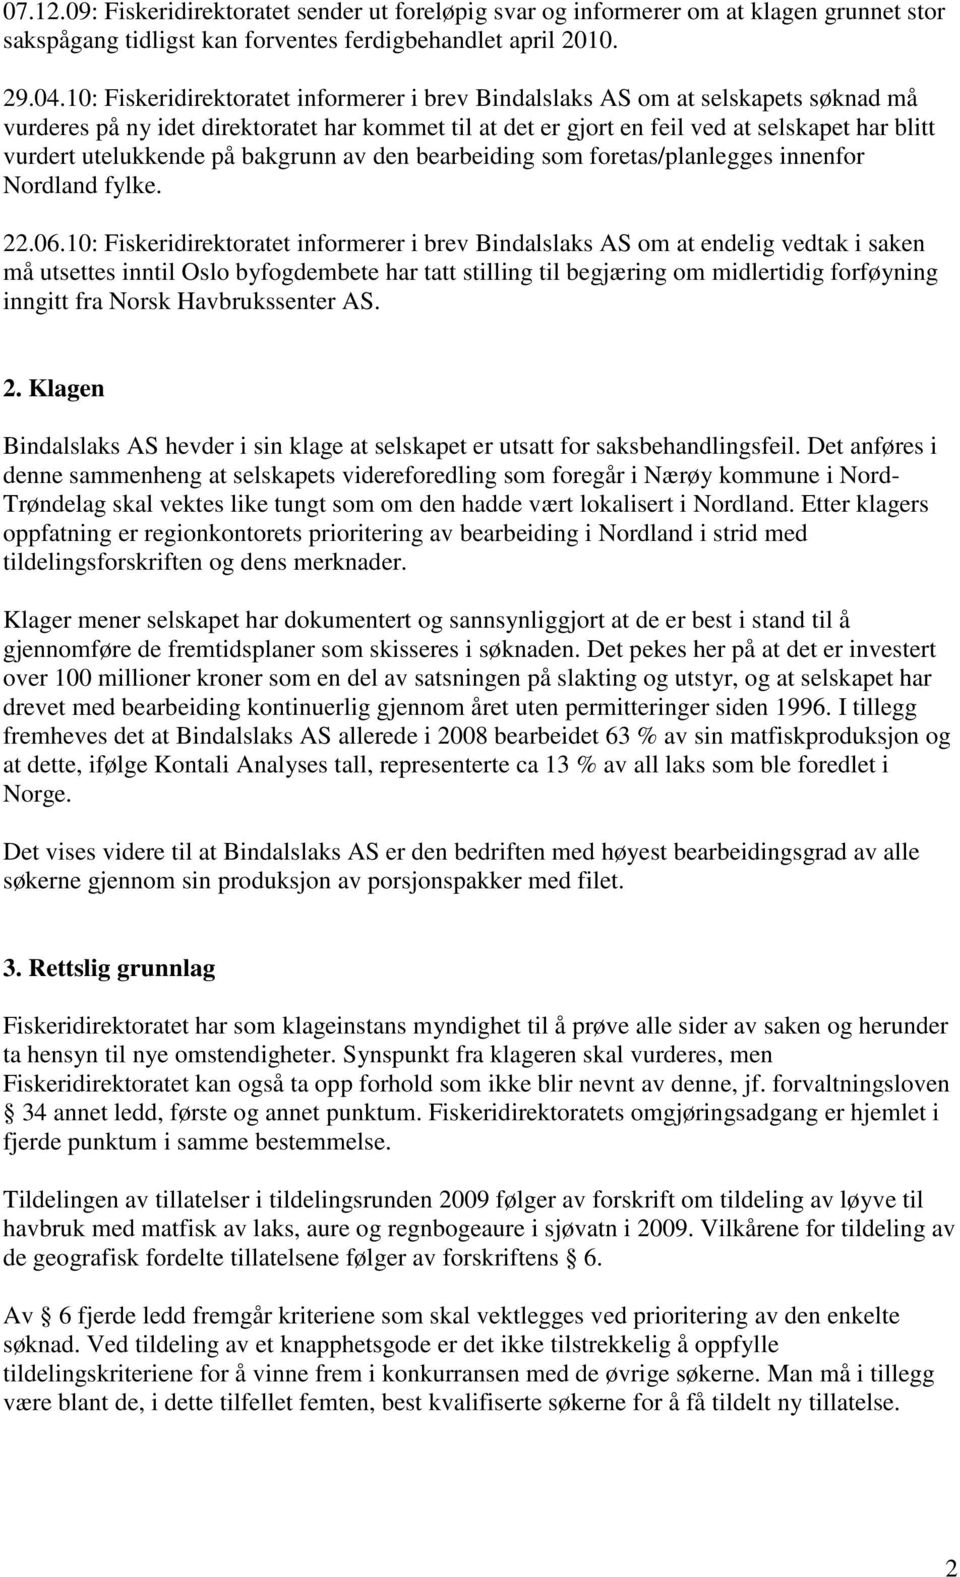 utelukkende på bakgrunn av den bearbeiding som foretas/planlegges innenfor Nordland fylke. 22.06.